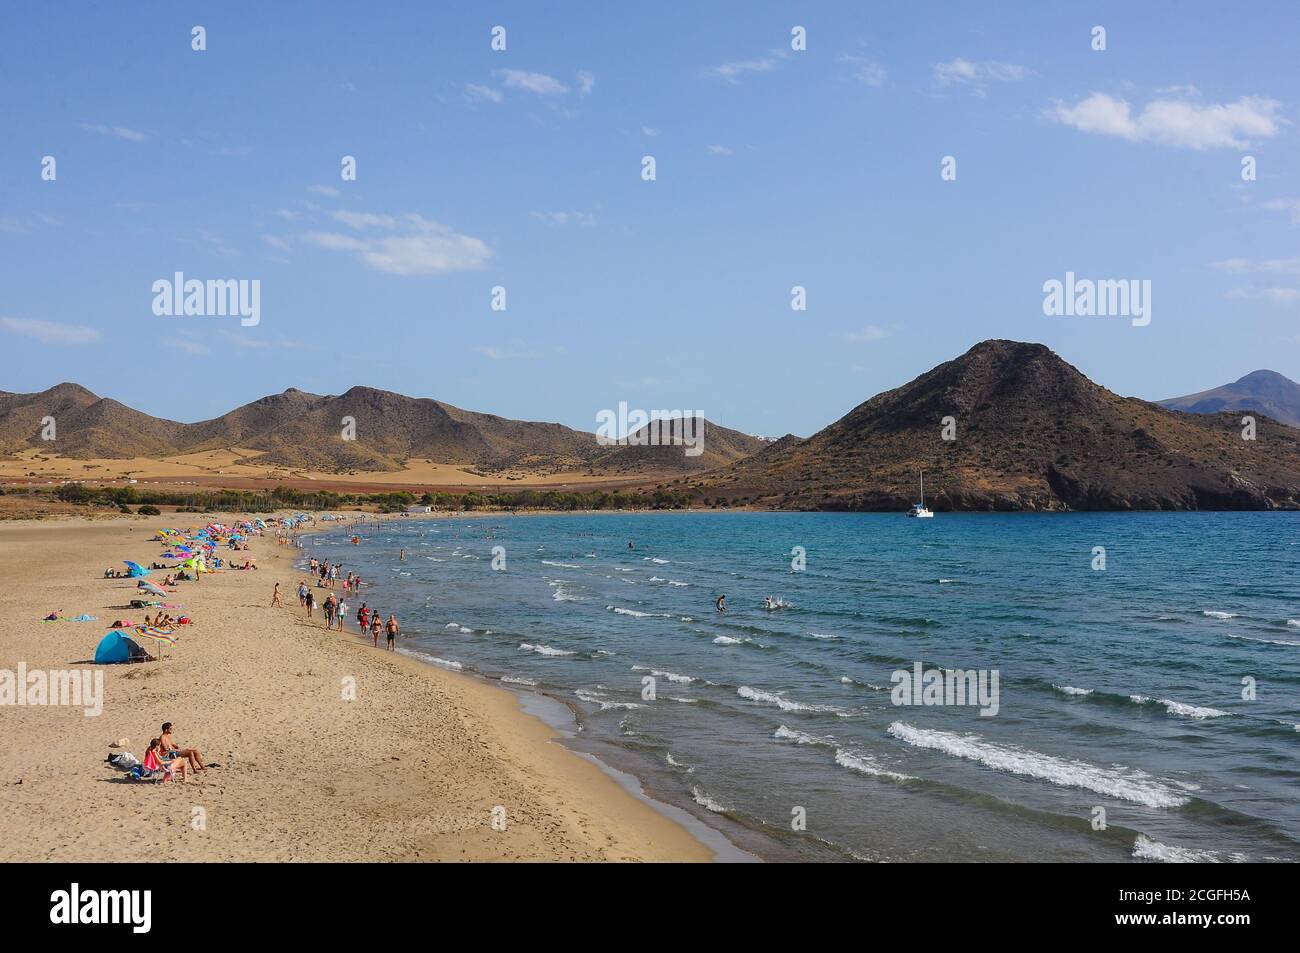 Playa de los Genoveses beach, beautiful bay in Cabo de Gata, Almeria, Spain Stock Photo